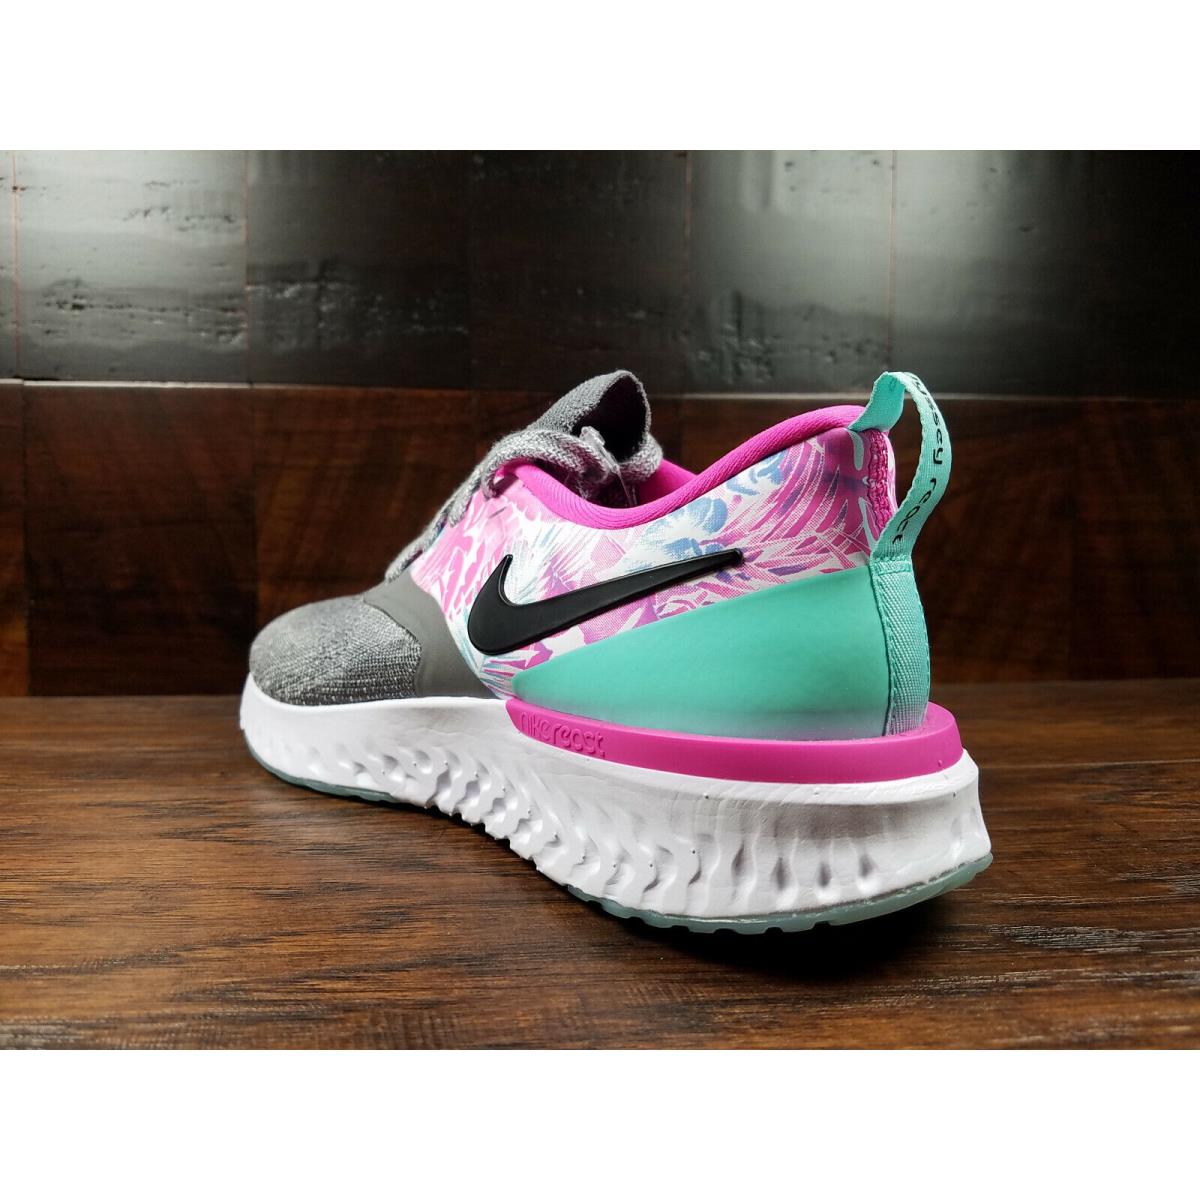 Nike shoes Odyssey React - Gunsmoke / Light Fuchsia / Tropical 2